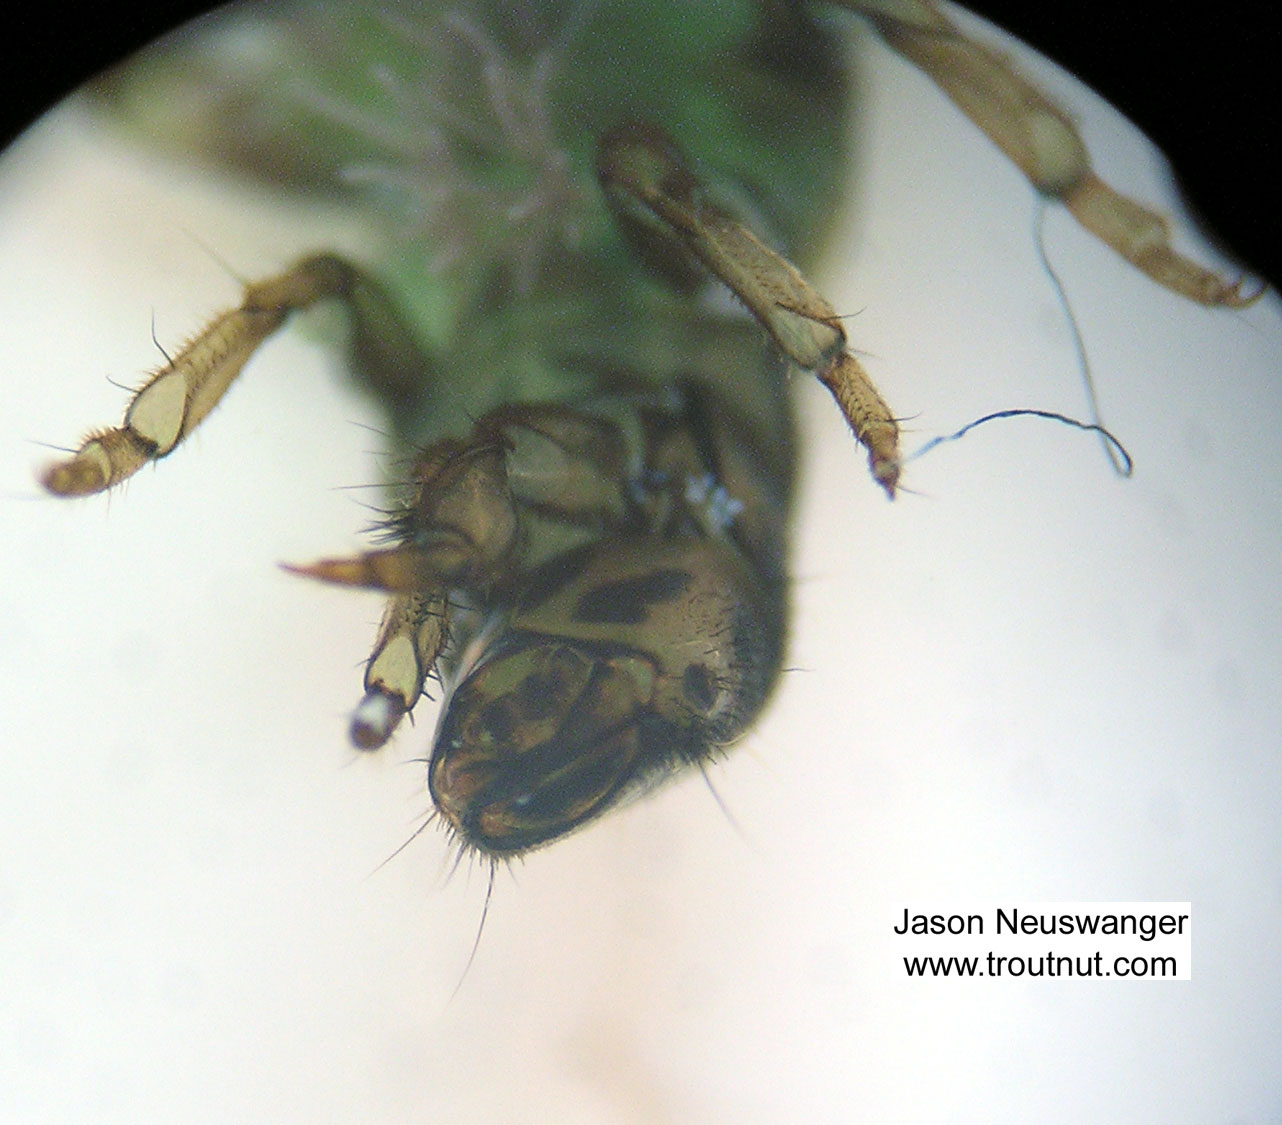 Hydropsychidae Caddisfly Larva from Fall Creek in New York